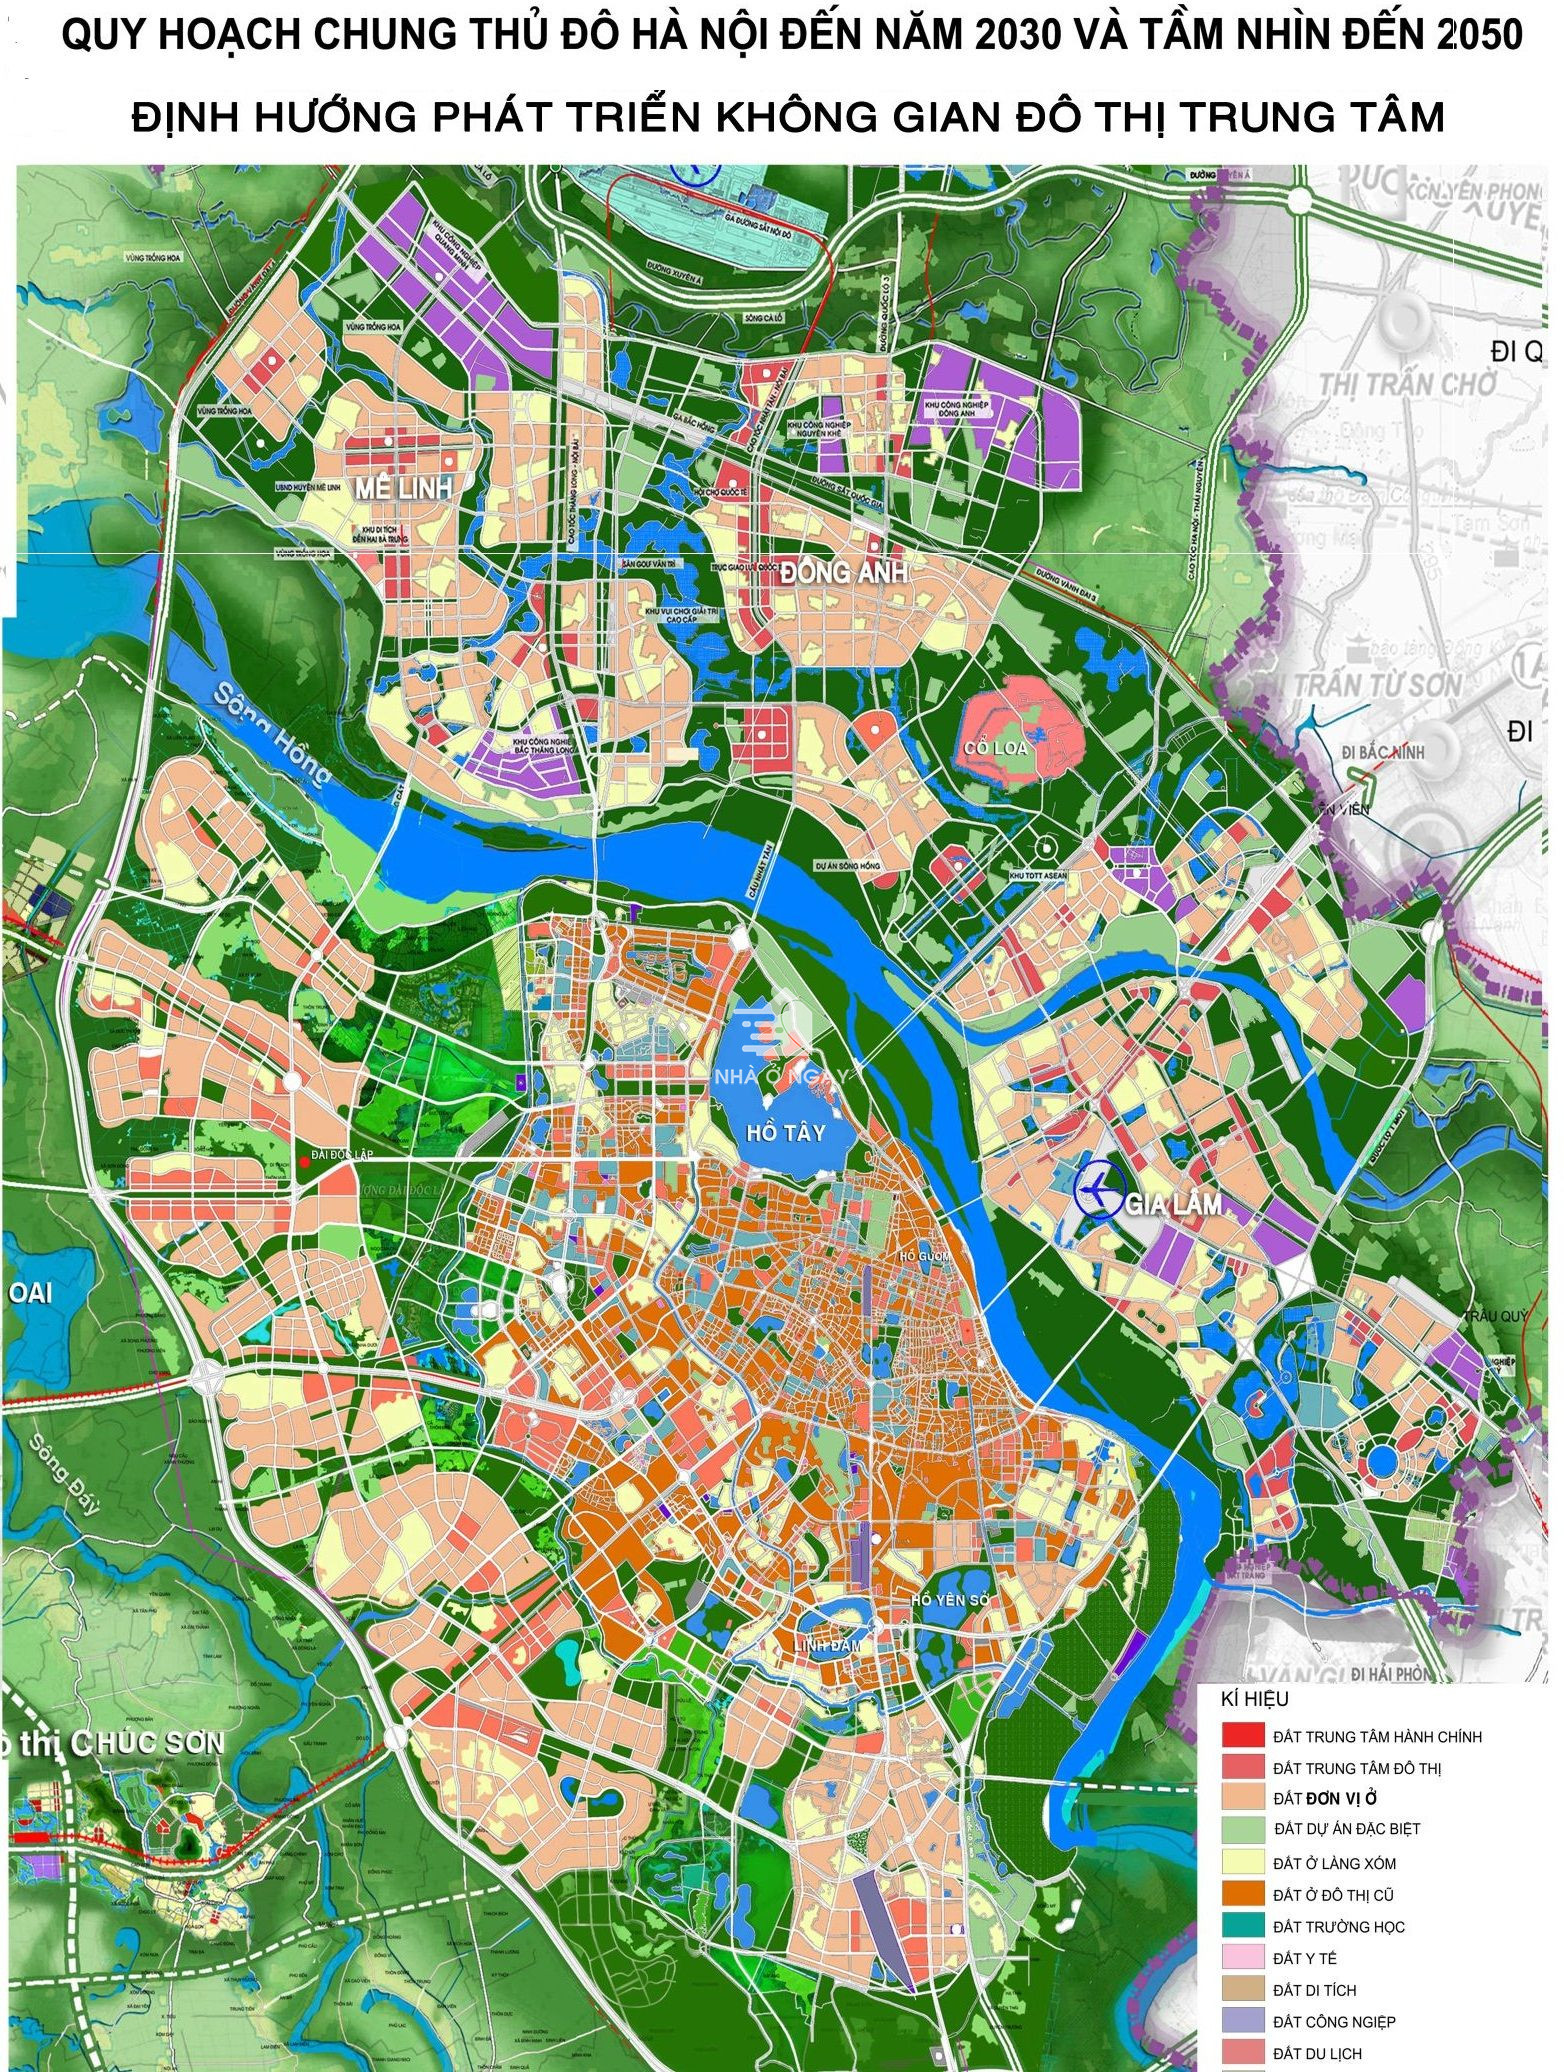 Quy hoạch Thành phố Hà Nội đang trở thành chủ đề được quan tâm nhiều nhất trong lĩnh vực đô thị hóa và phát triển bền vững. Bản đồ mới nhất năm 2024 đưa ra các khu vực cụ thể, định hướng phát triển và quản lý các khu vực đô thị. Cùng khám phá ngay hình ảnh liên quan để hiểu rõ hơn về quy hoạch này.